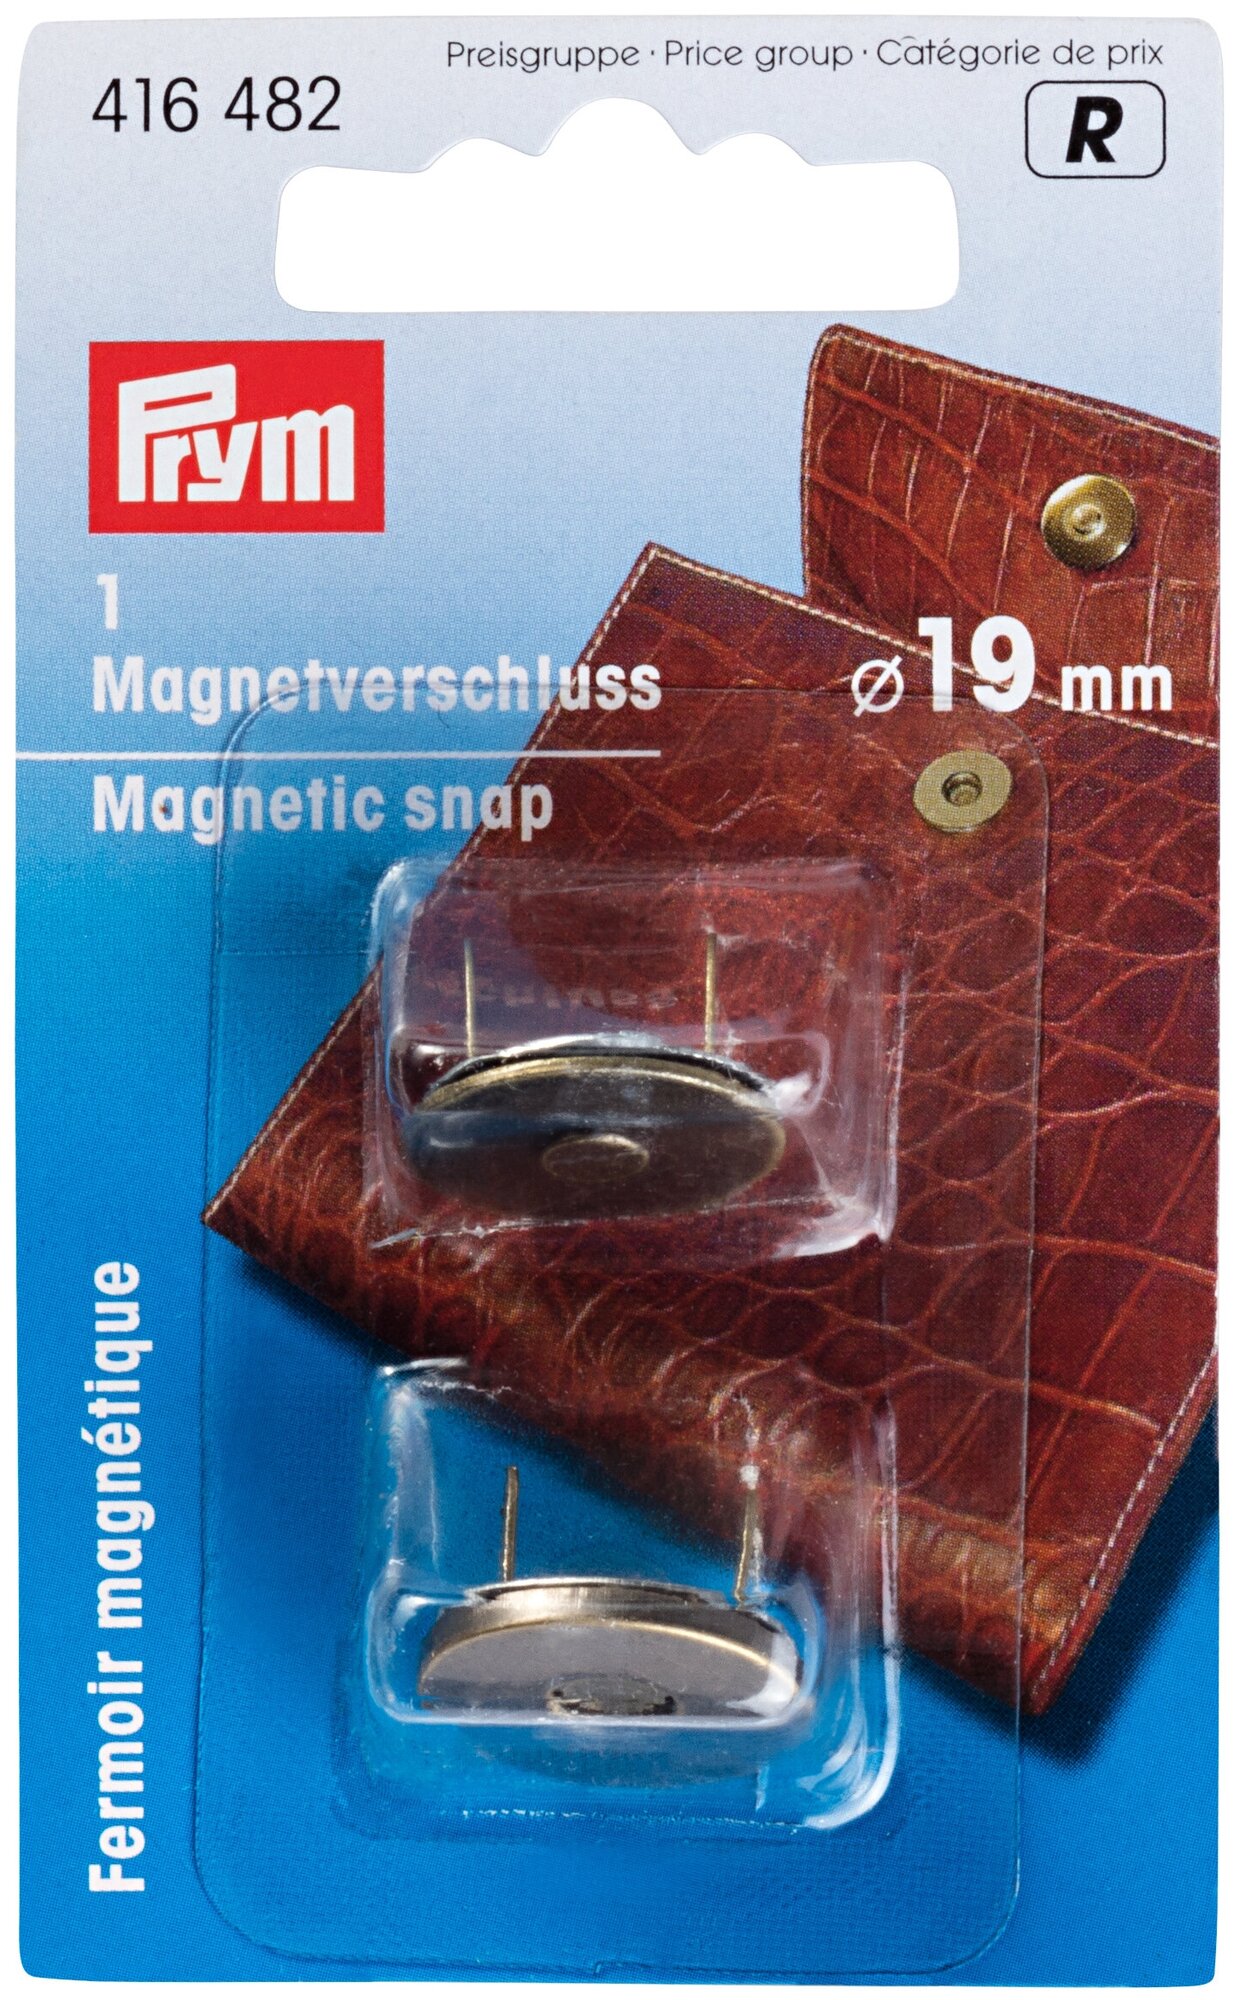 Товары для шитья PRYM 416482 Магнитная застежка в блистере цв. под состар. латунь